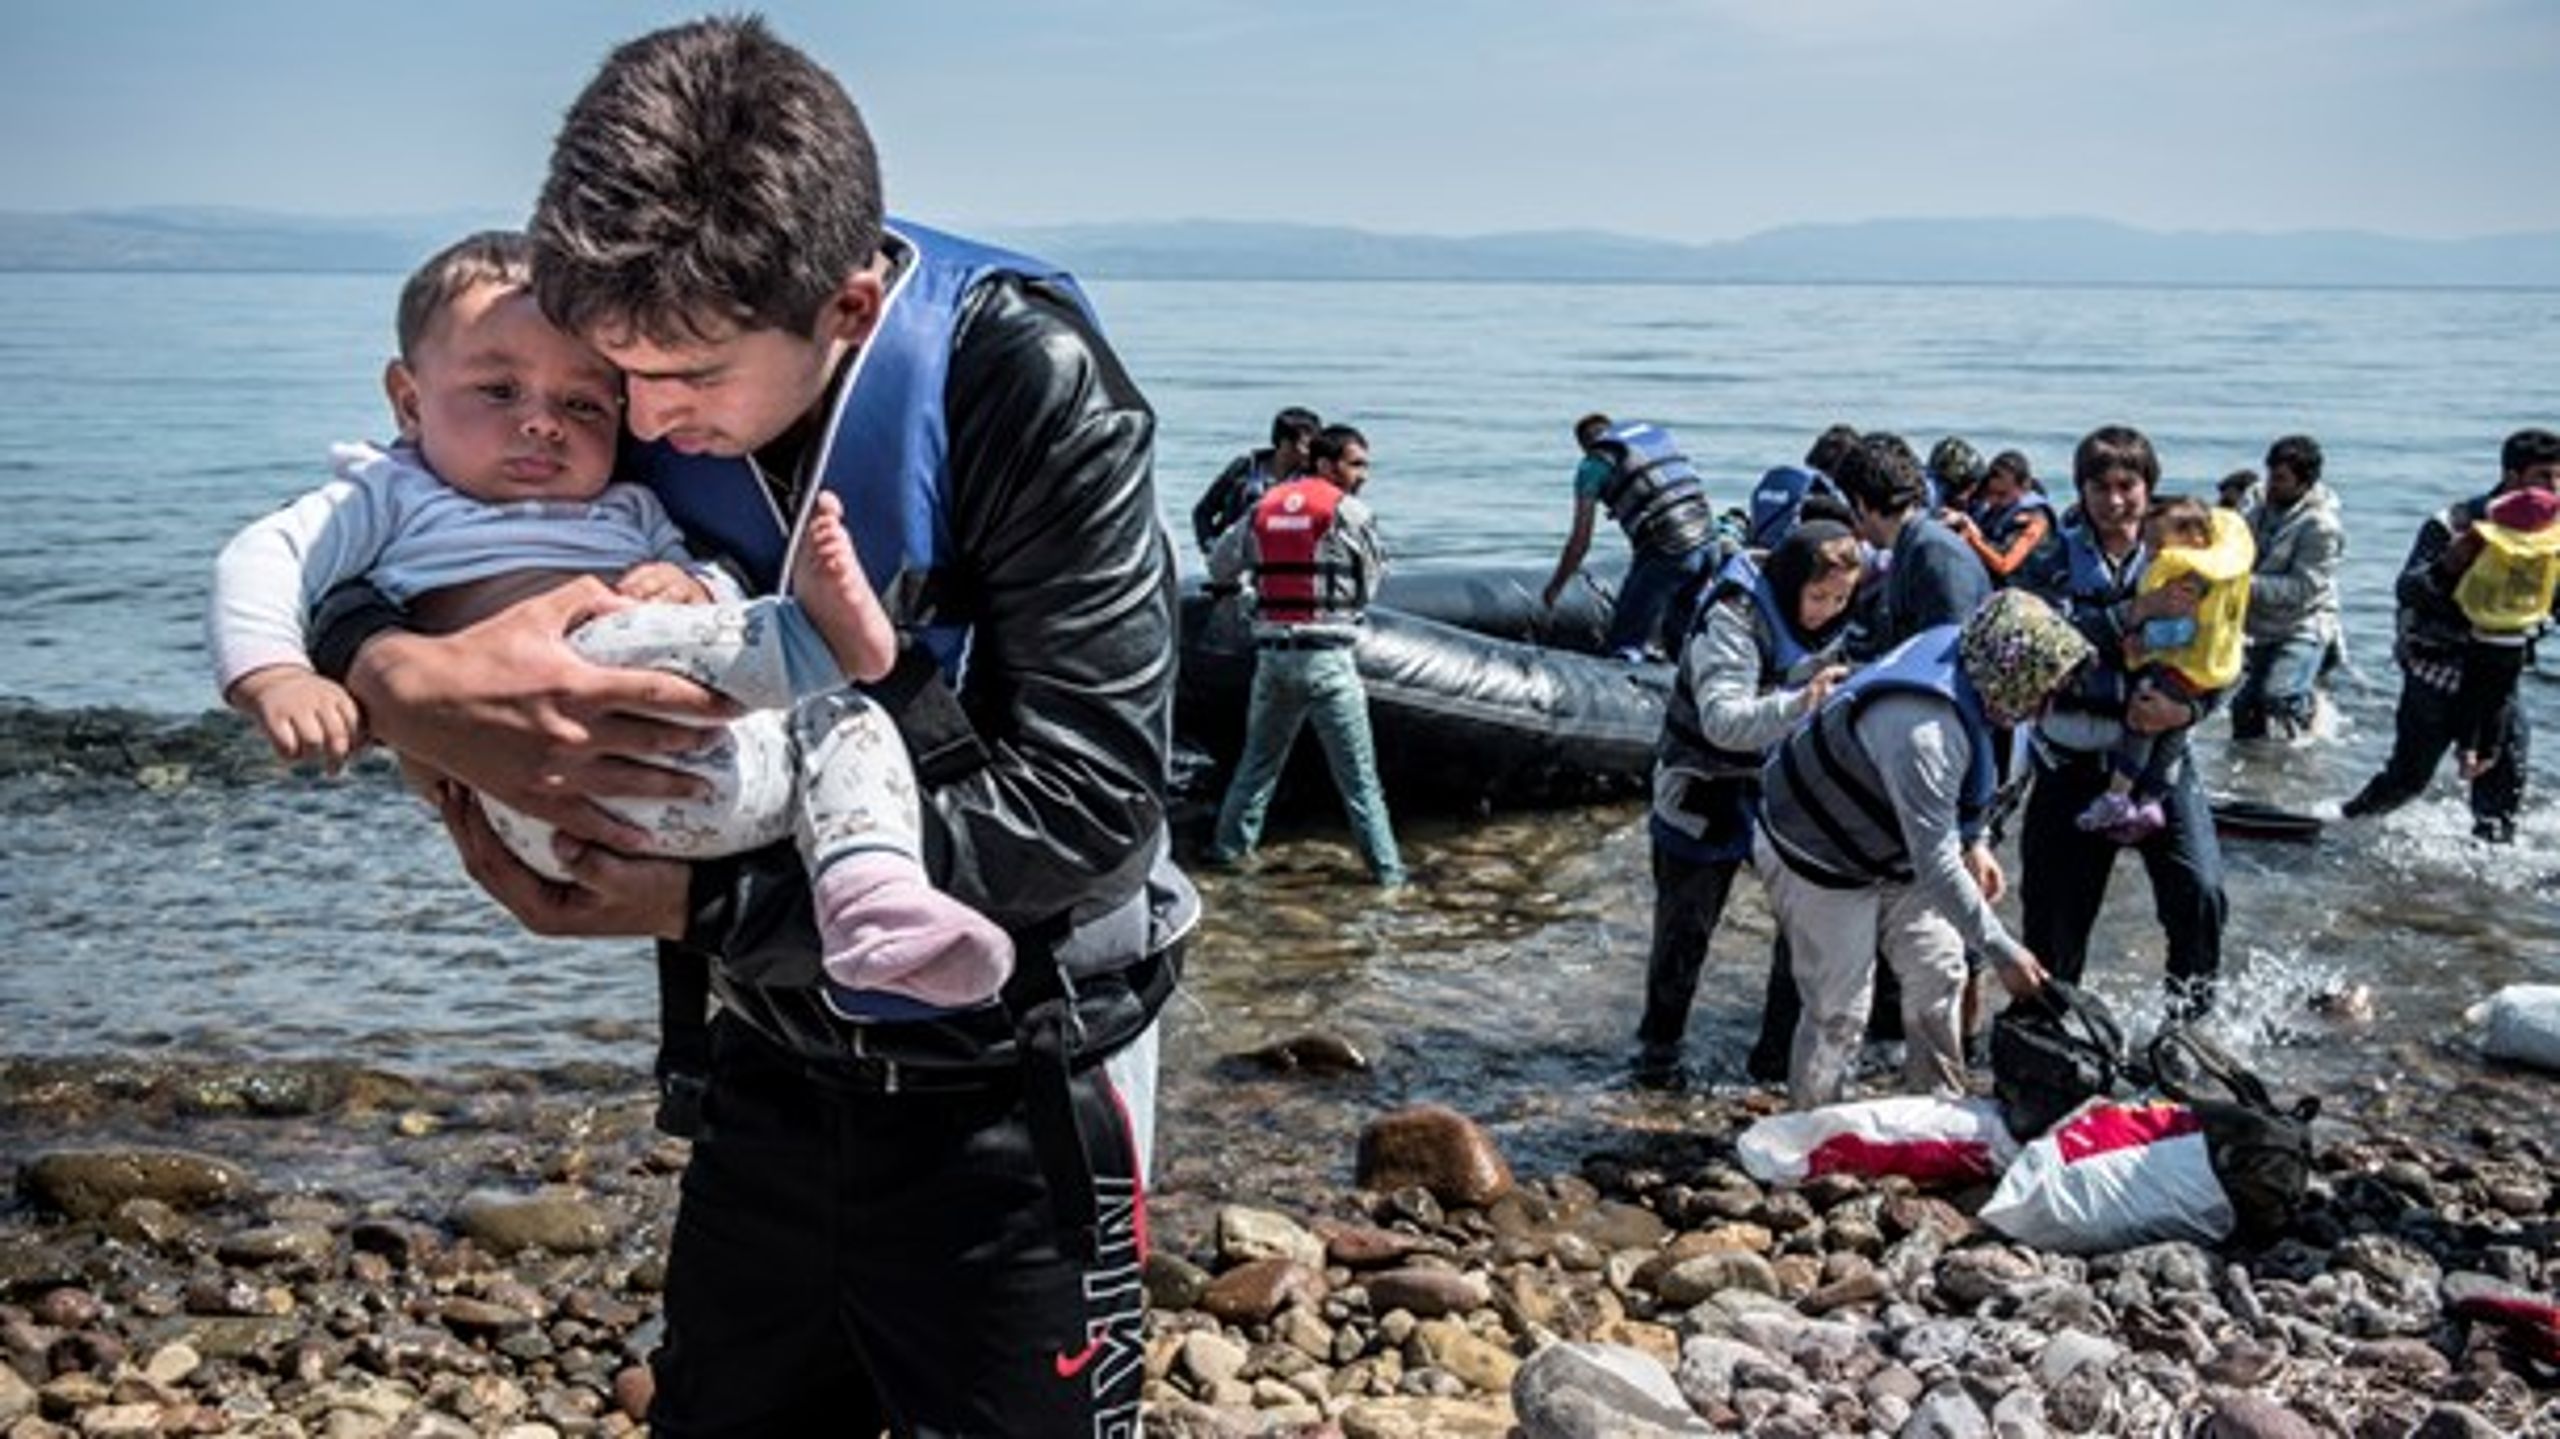 Billeder af flygtninge,
der går i
land på græske og
italienske strandbreder
er blevet
hverdagskost for verdenssamfundet.
Nu opfordrer
FN til en ny global
flygtningeaftale.